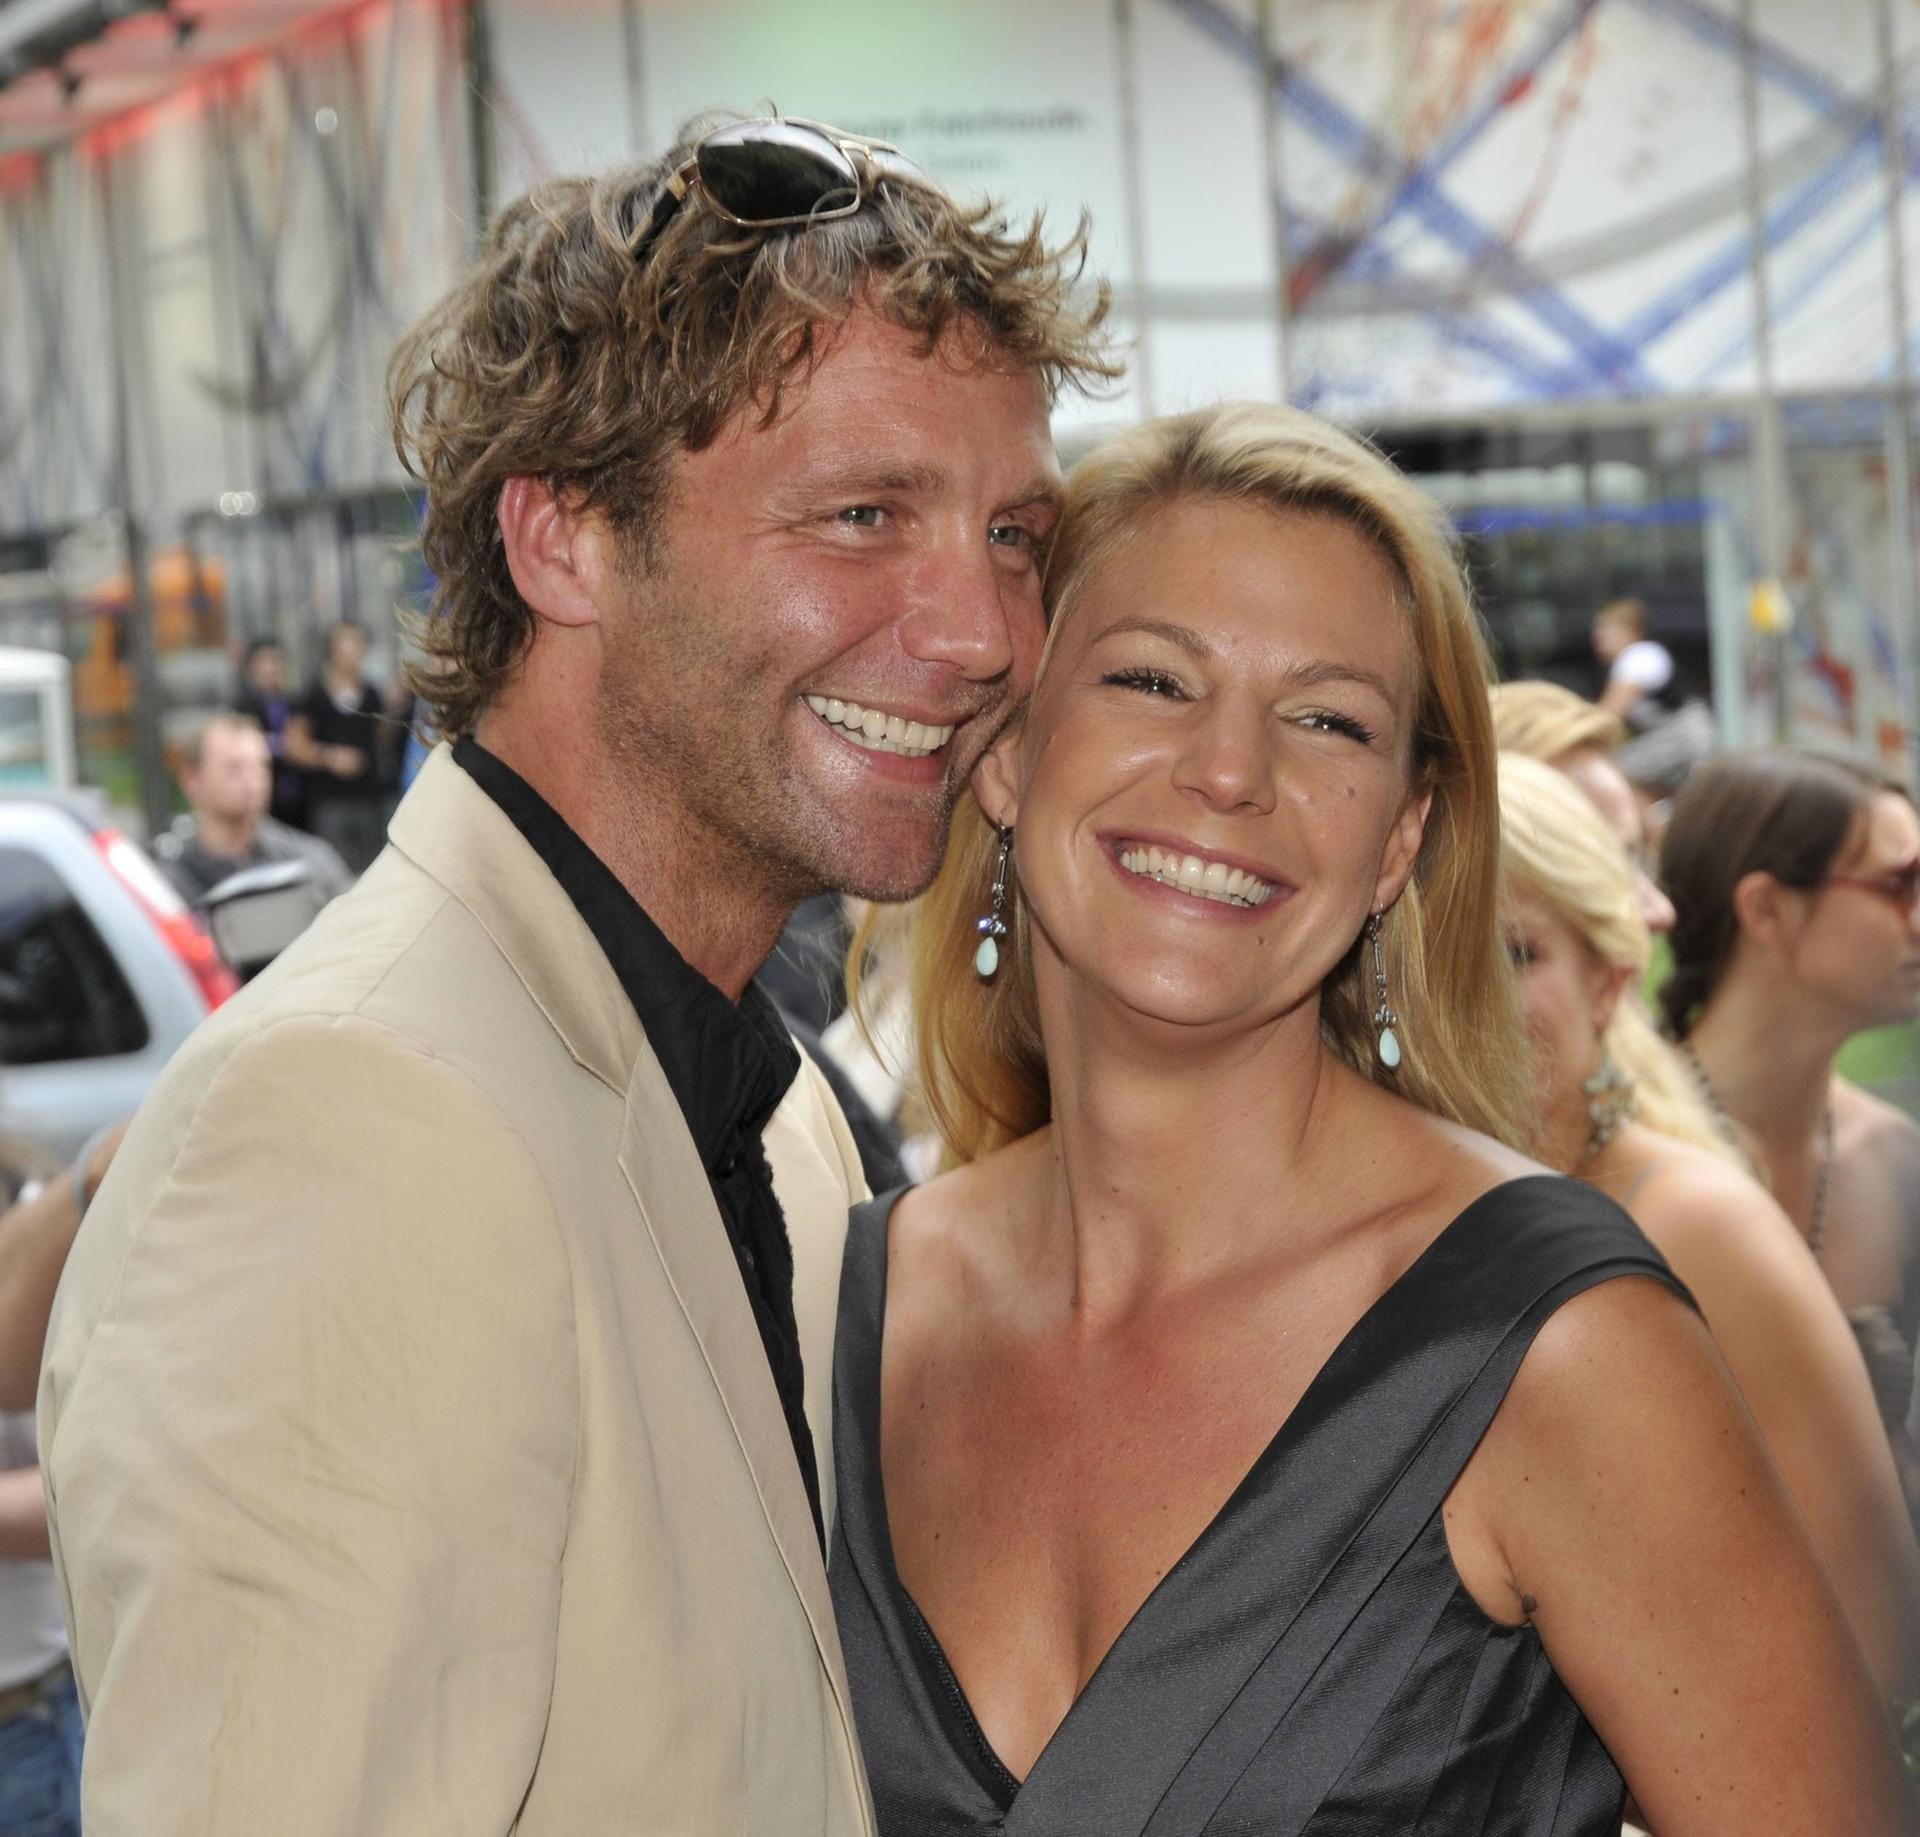 2009 liebte sie ihn: Schauspieler Patrick Fichte hatte das Herz von Sophie Schütt erobert – doch die Liebe hielt nicht.